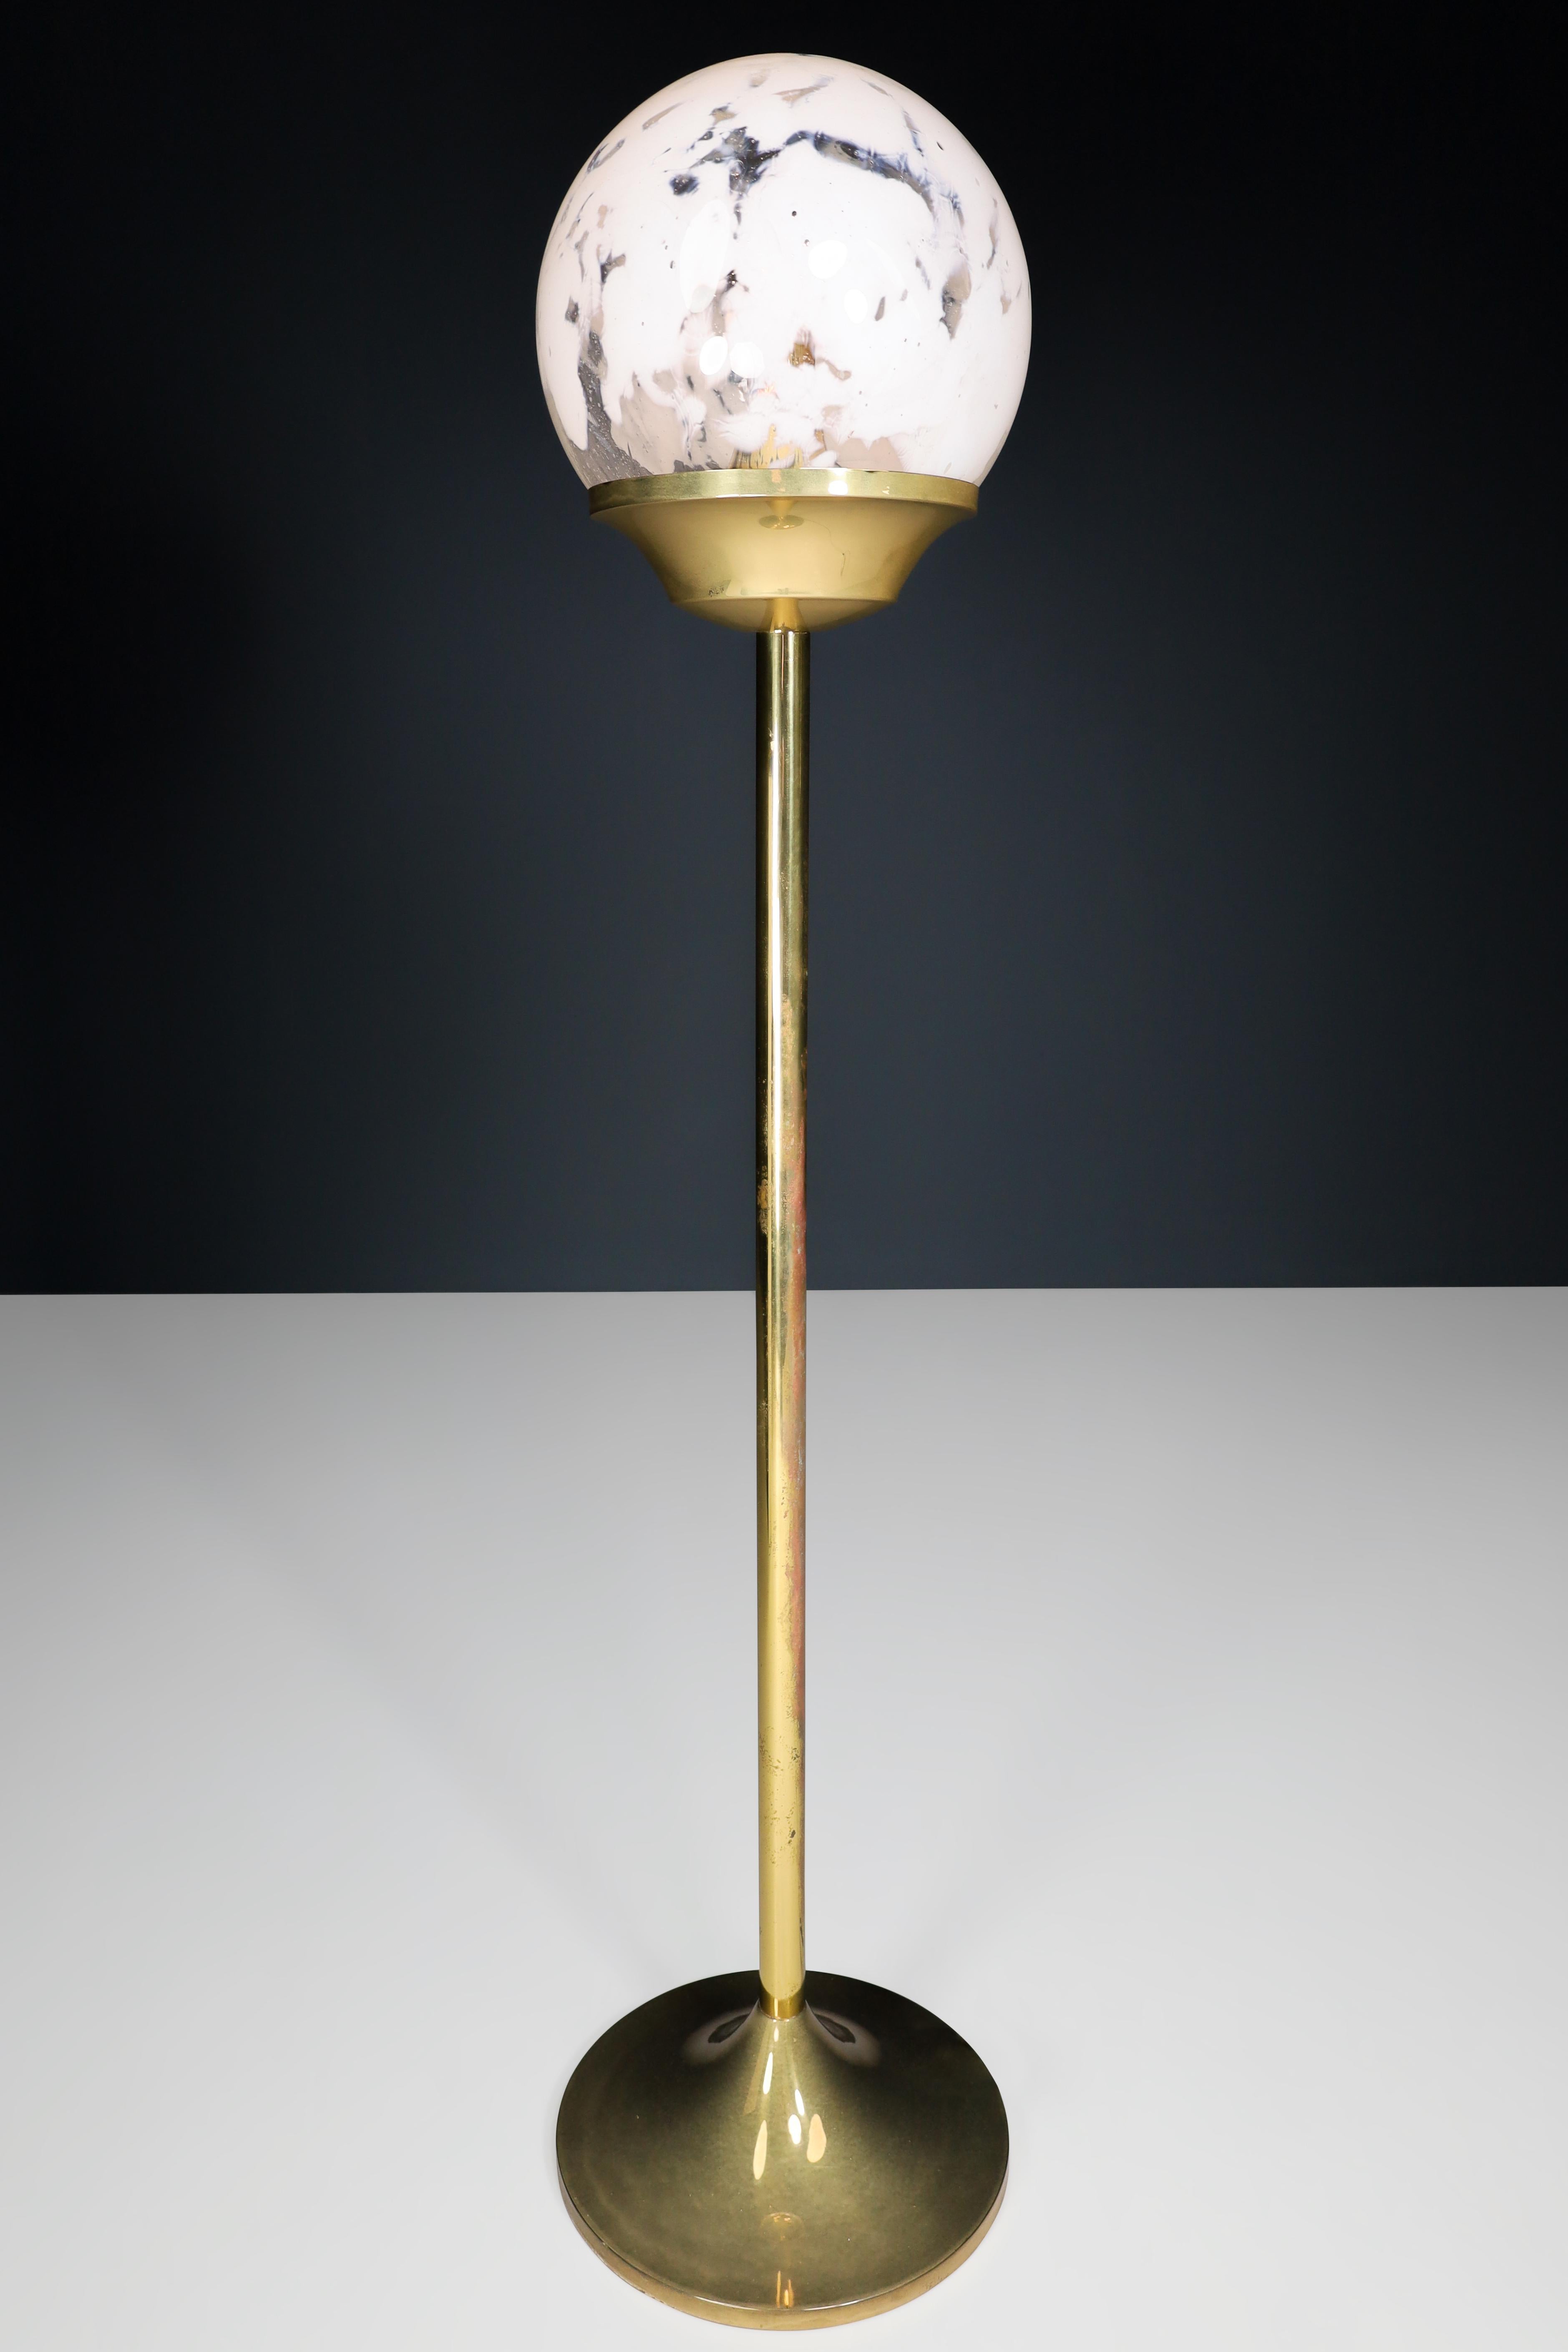 Lampadaire bohème en laiton et verre d'art soufflé à la main République tchèque 1960

Ce lampadaire en laiton et en verre d'art soufflé à la main est un ajout étonnant à tout intérieur. Les globes en verre clair soufflé à la main, qui présentent de